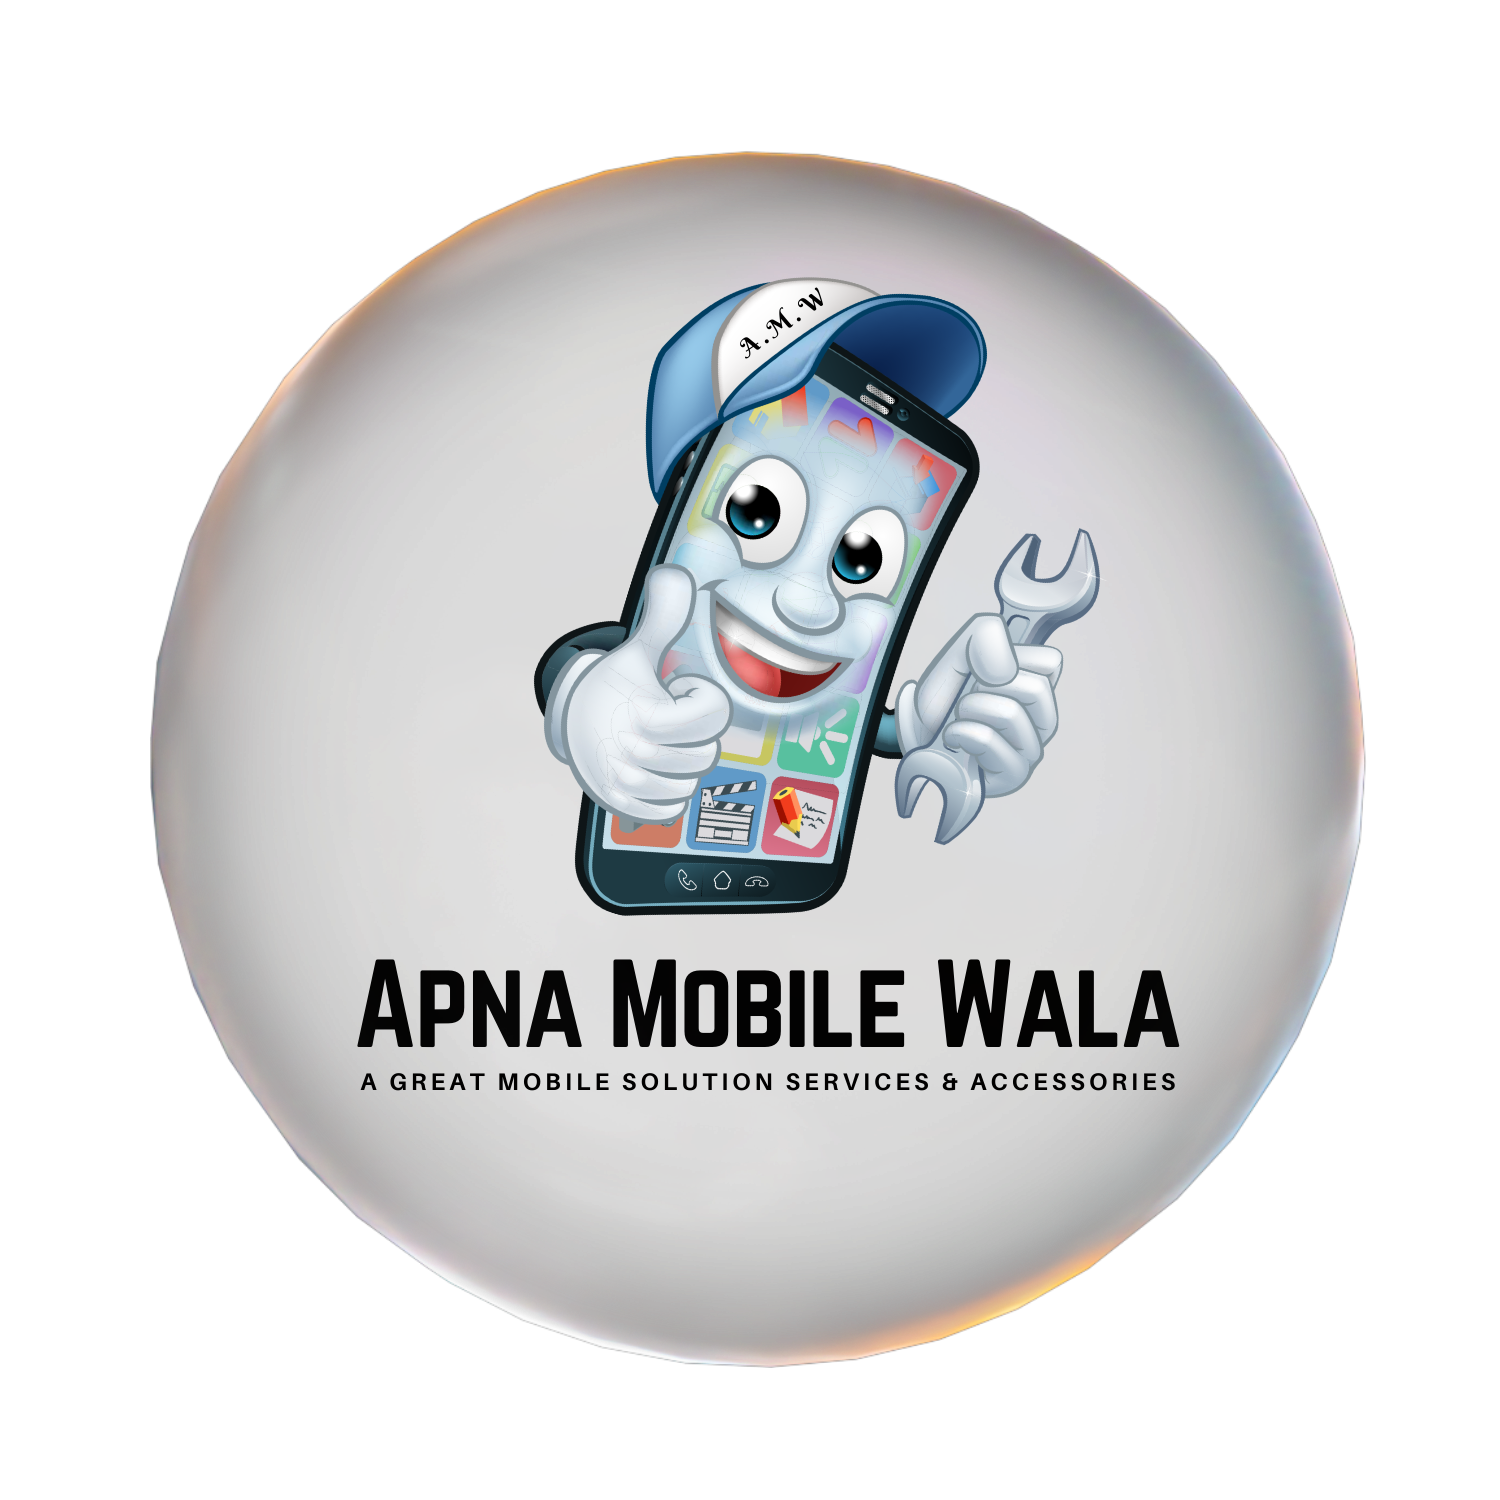 apna mobile wala